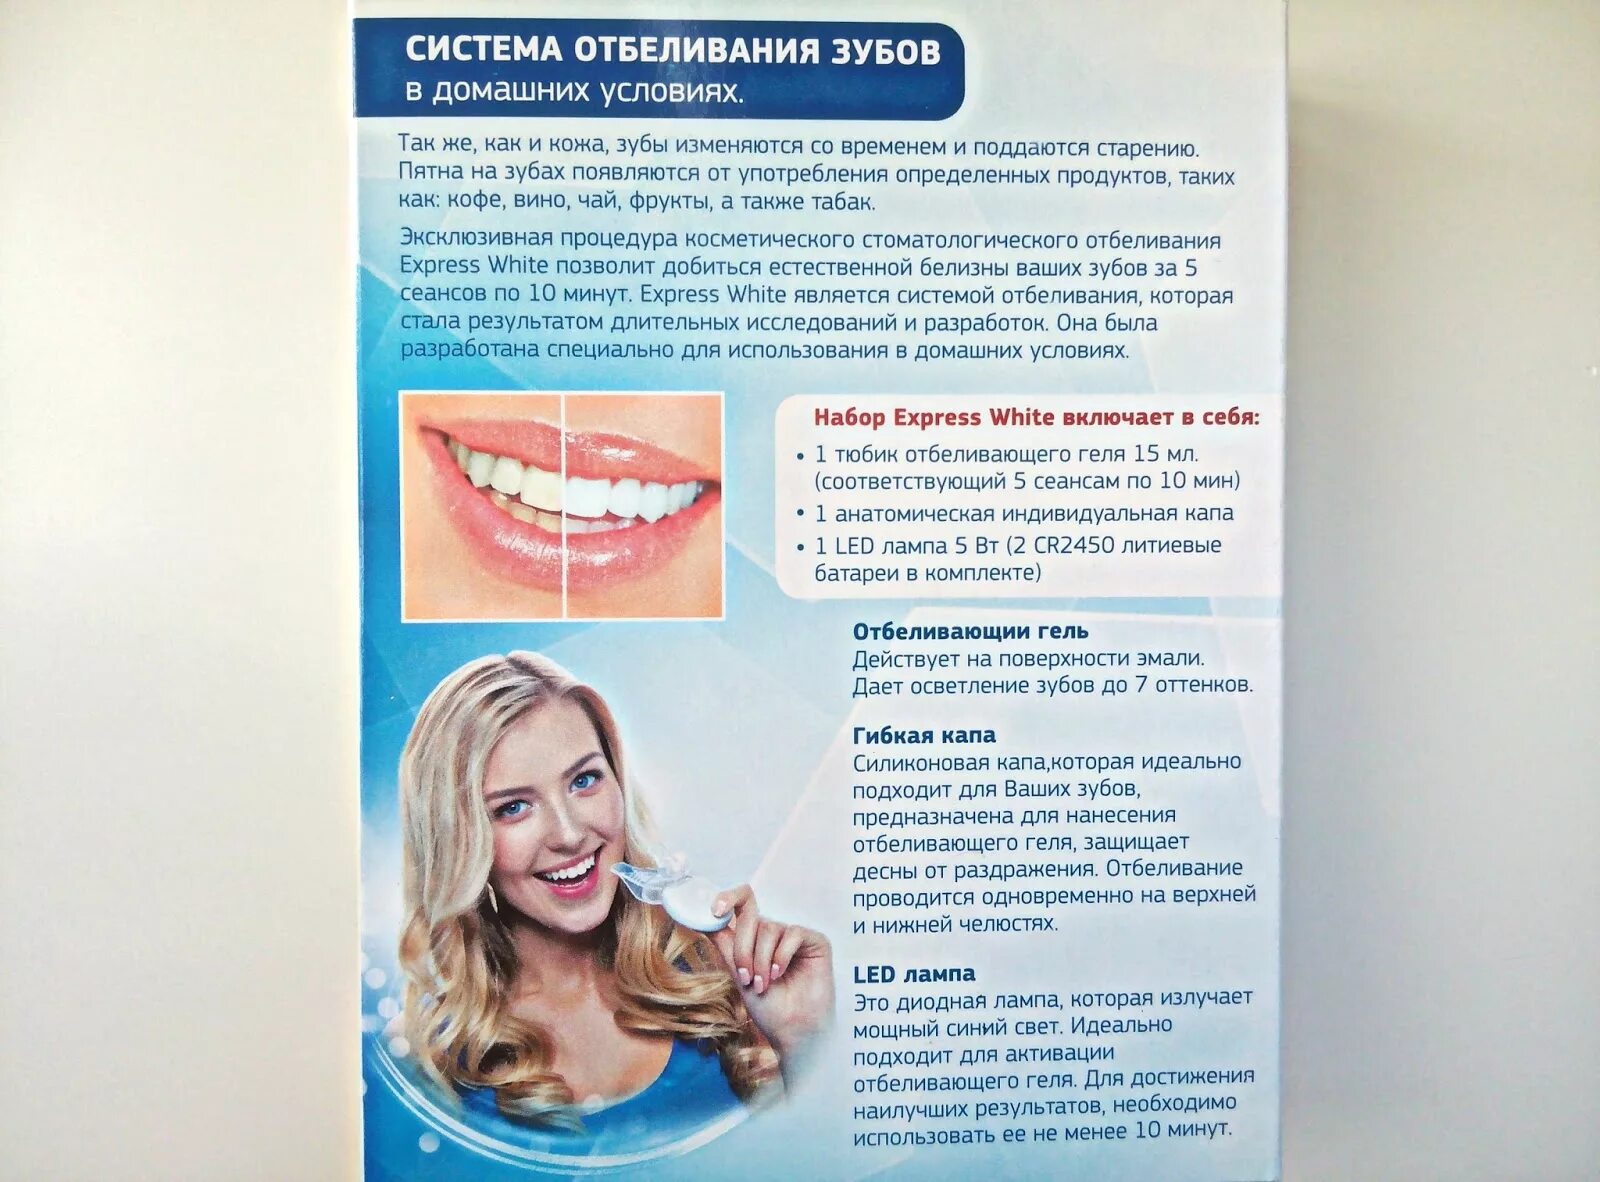 Отбеливание зубов. Отбеливание зубов памятка. Система домашнего отбеливания зубов. Памятка по отбеливанию зубов.